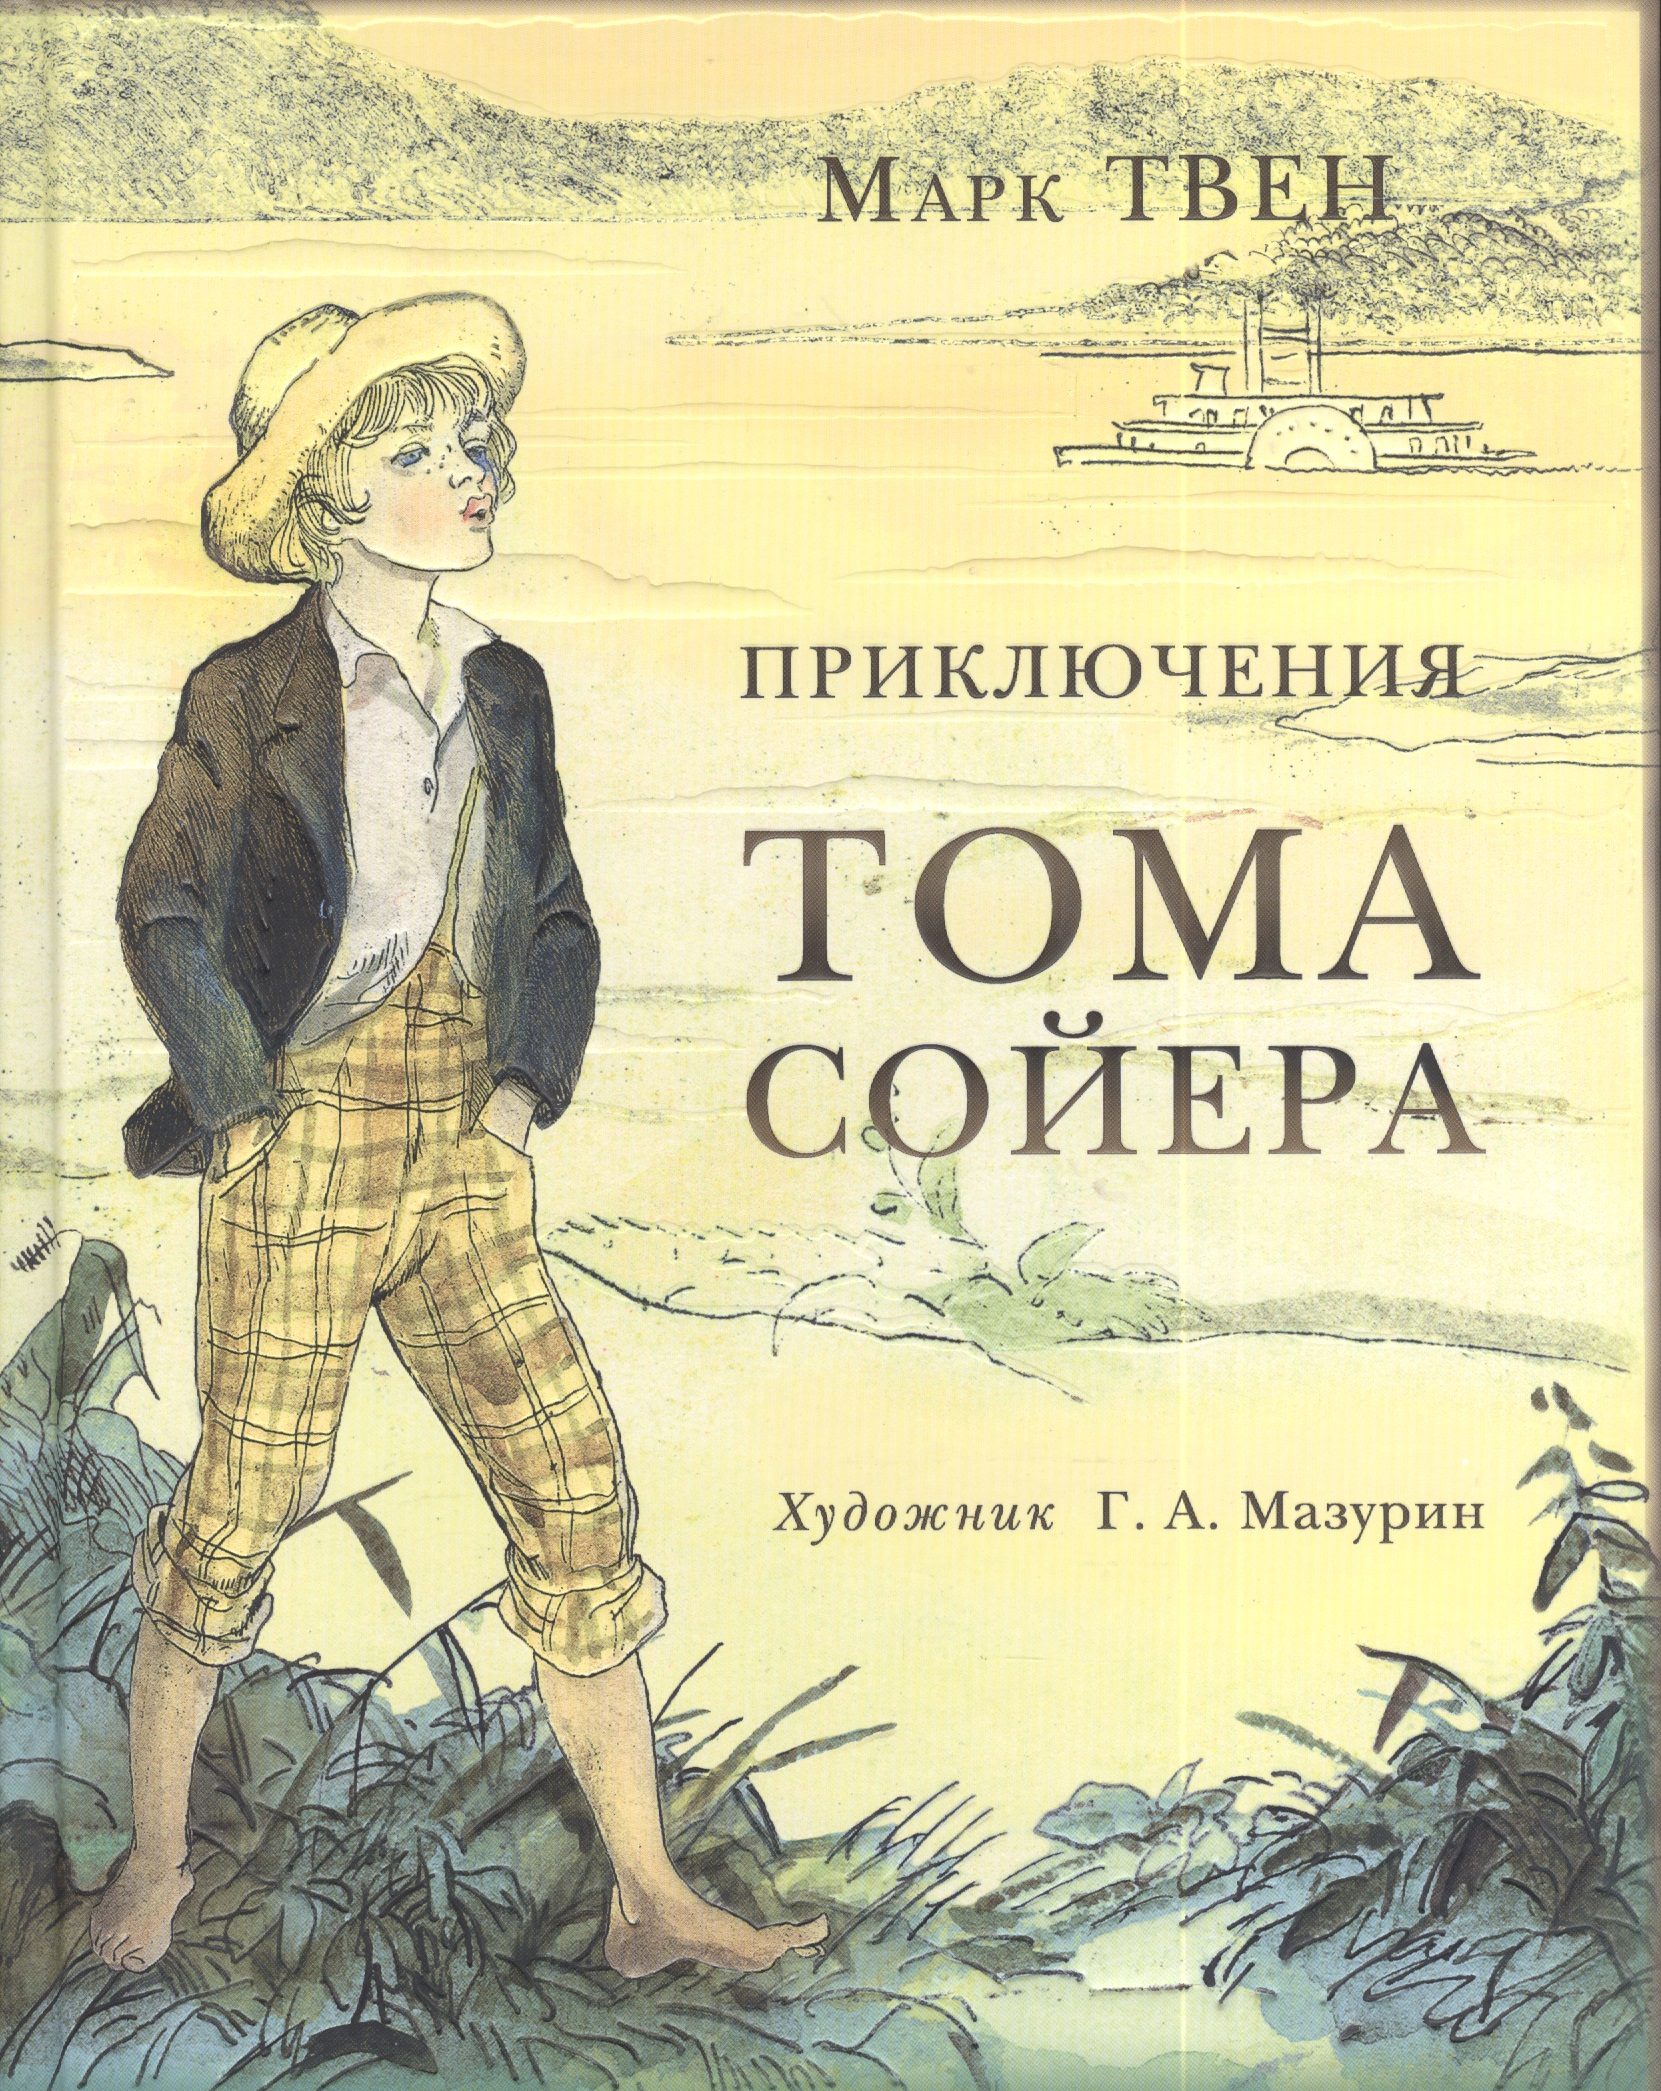 Приключения о томе сойере. 3 М Твен приключения Тома Сойера. Приключения Тома Сойера марка от Твена.